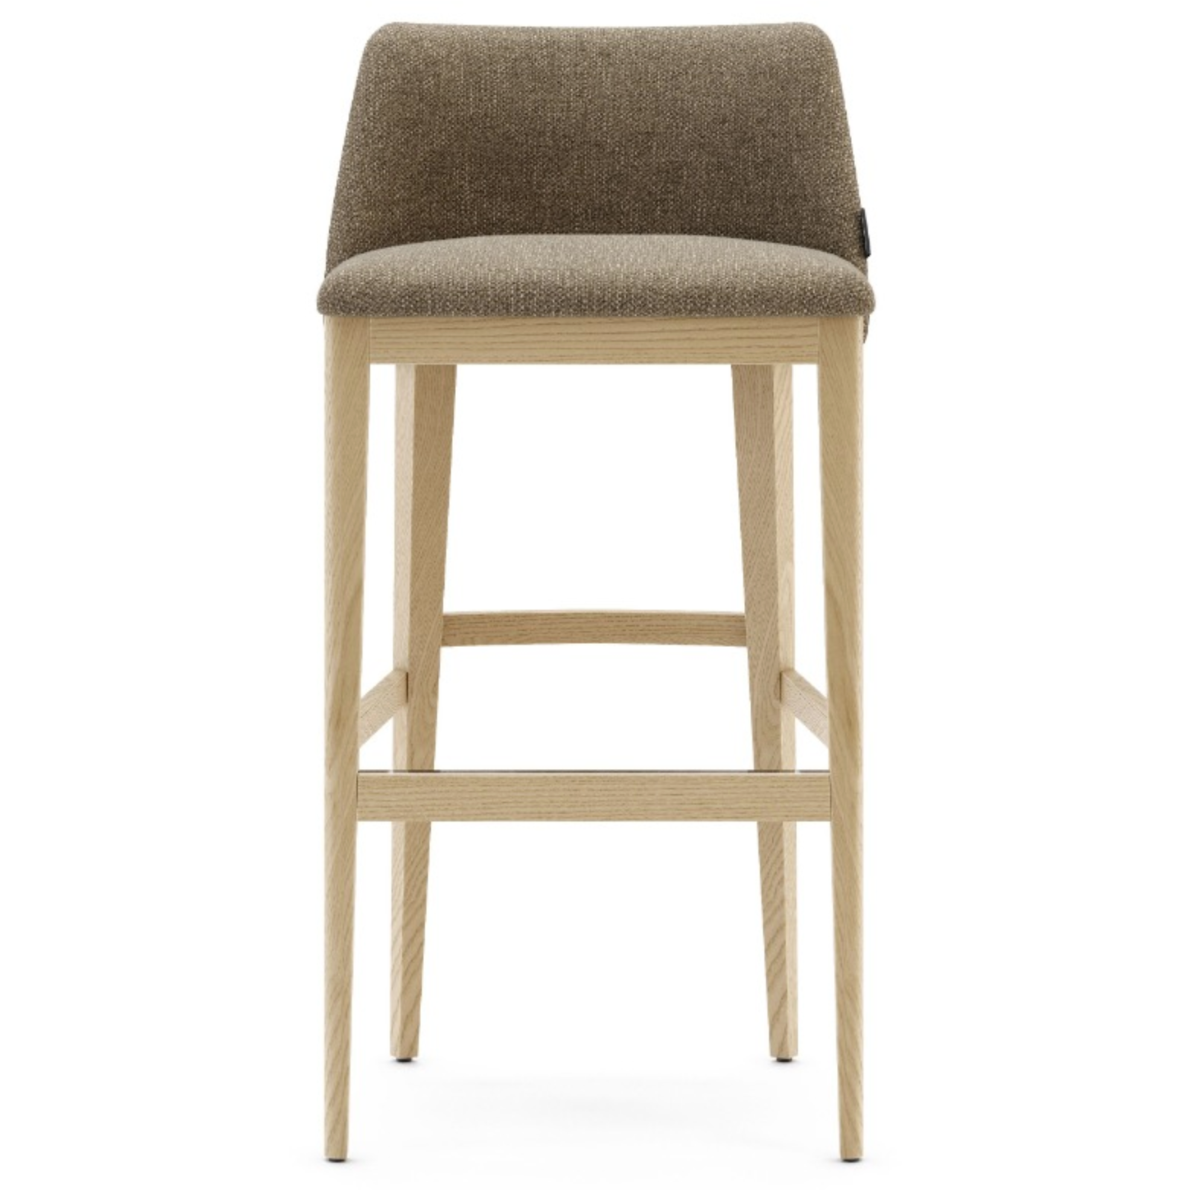 Domkapa Louise Bar Chair - Customisable | Modern Furniture + Decor